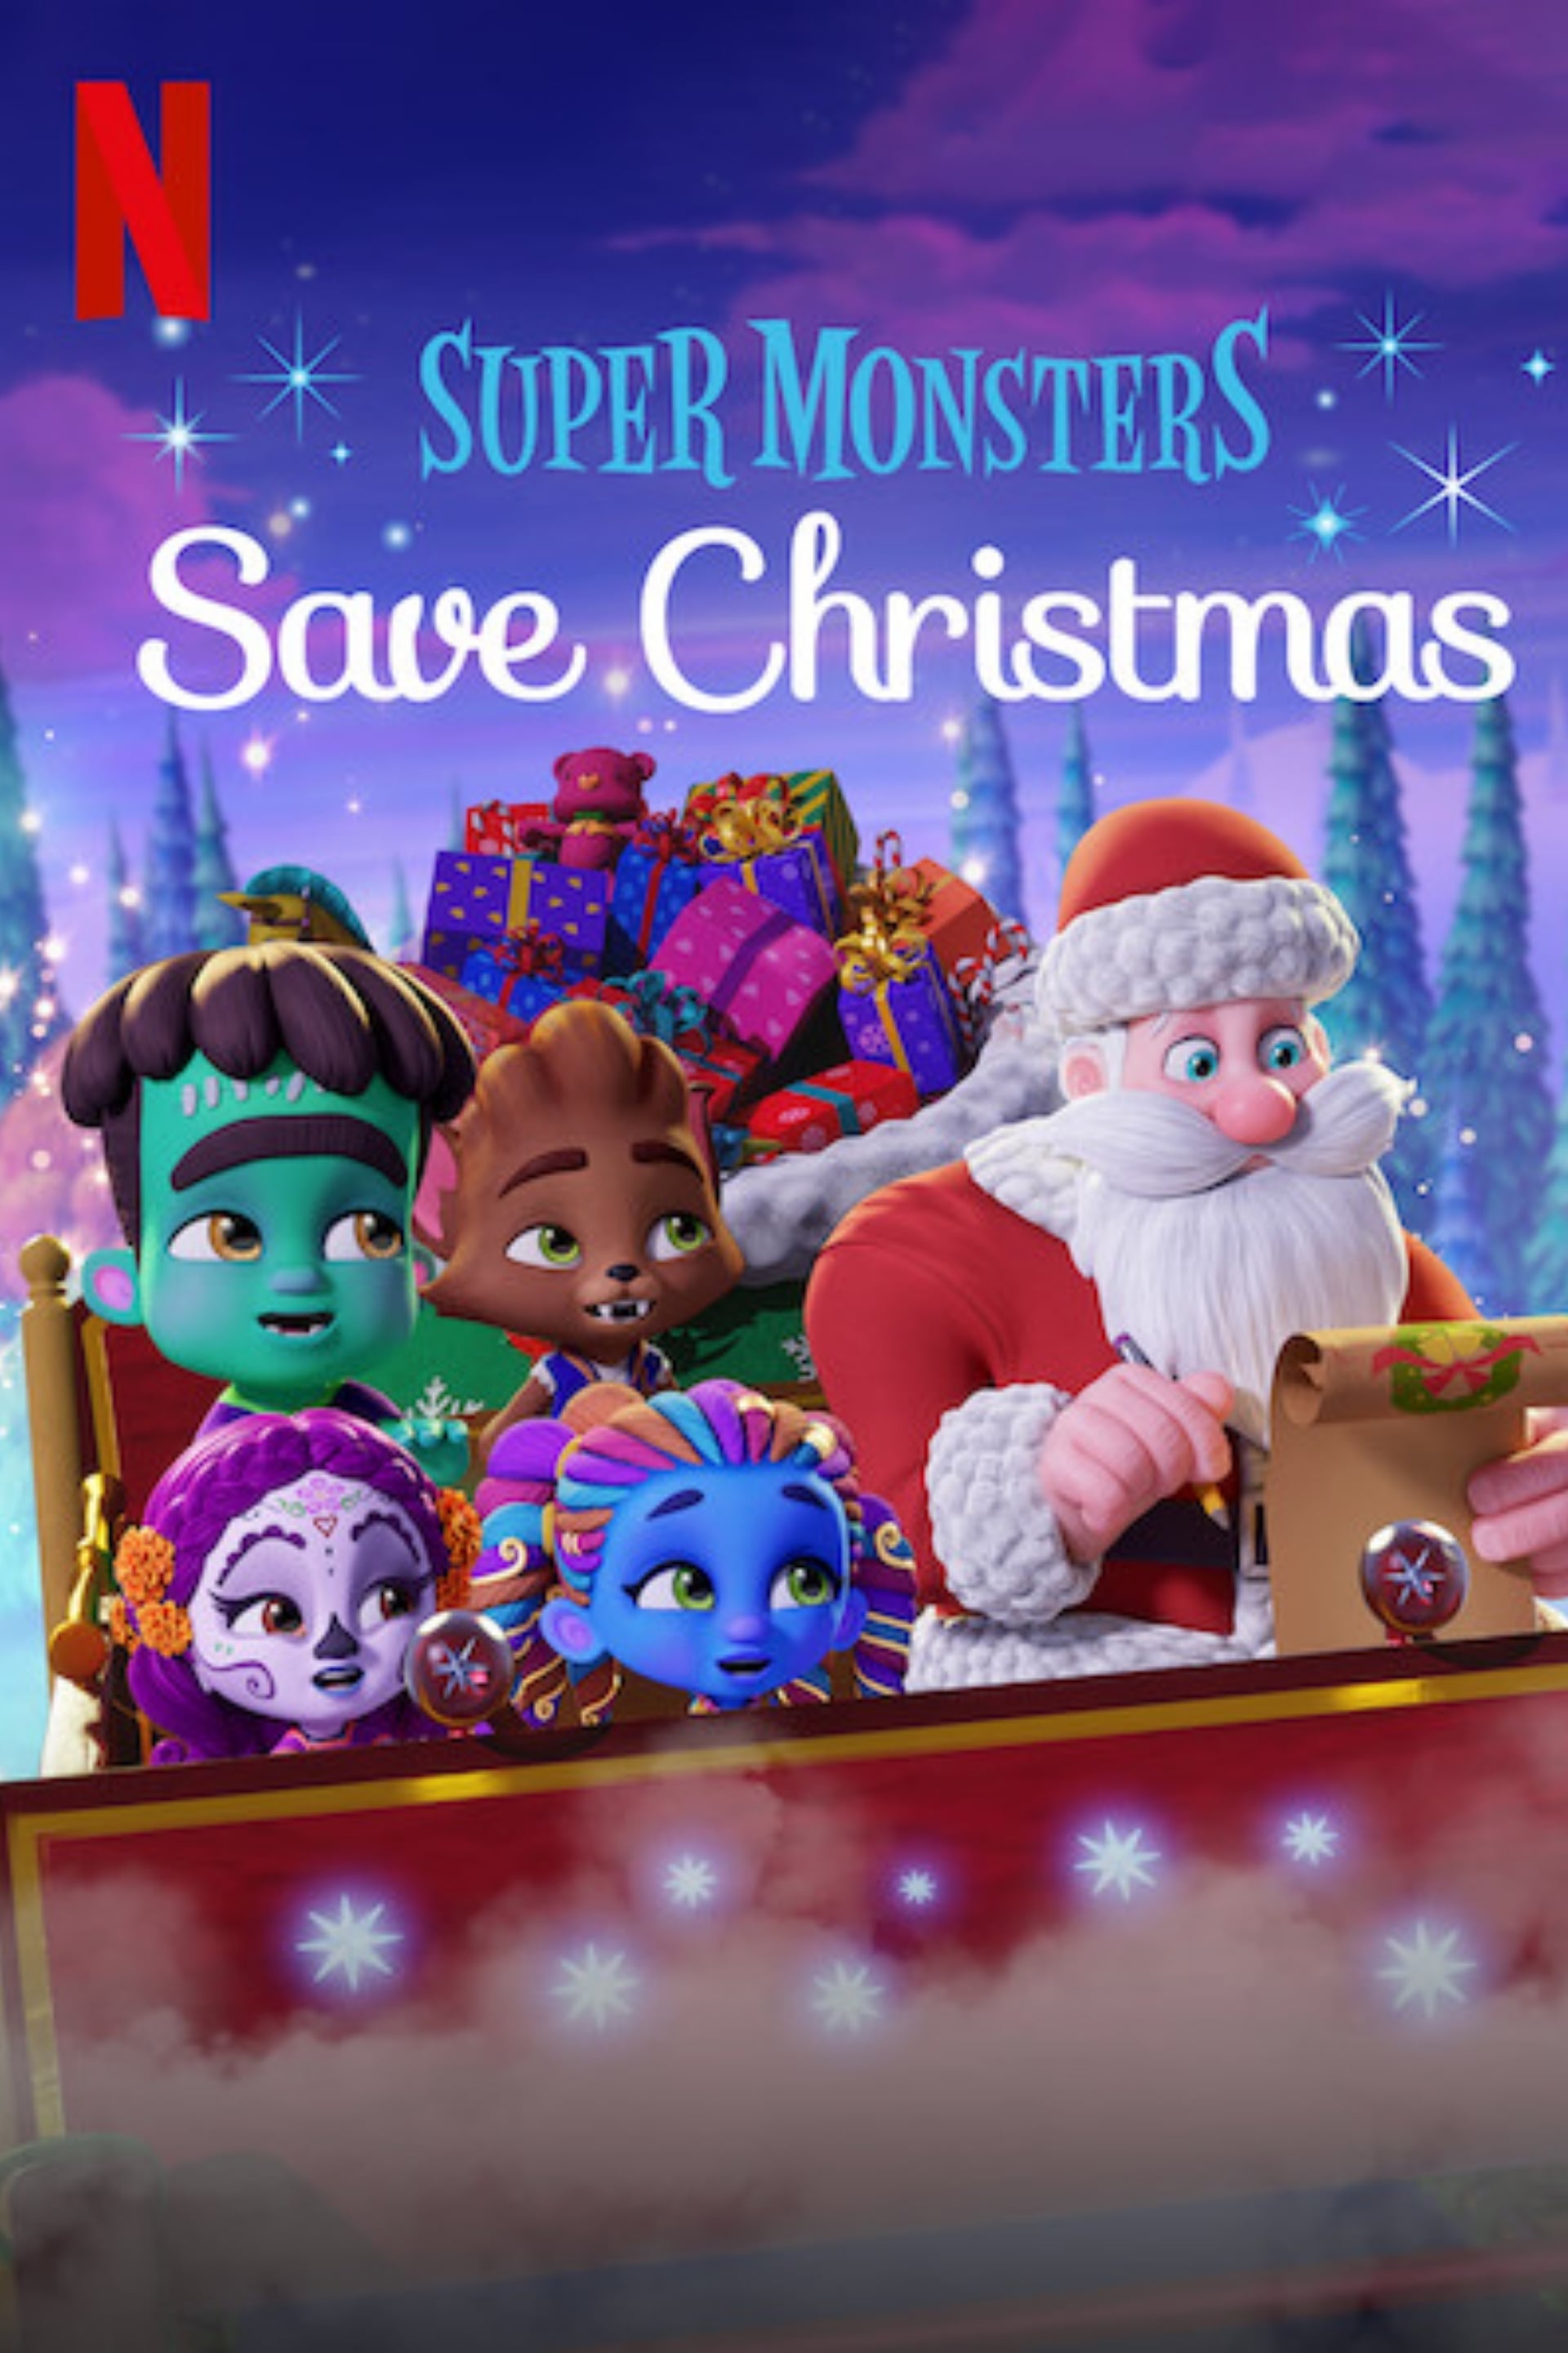 Hội Quái Siêu Cấp: Giải cứu Giáng Sinh (Super Monsters Save Christmas) [2019]